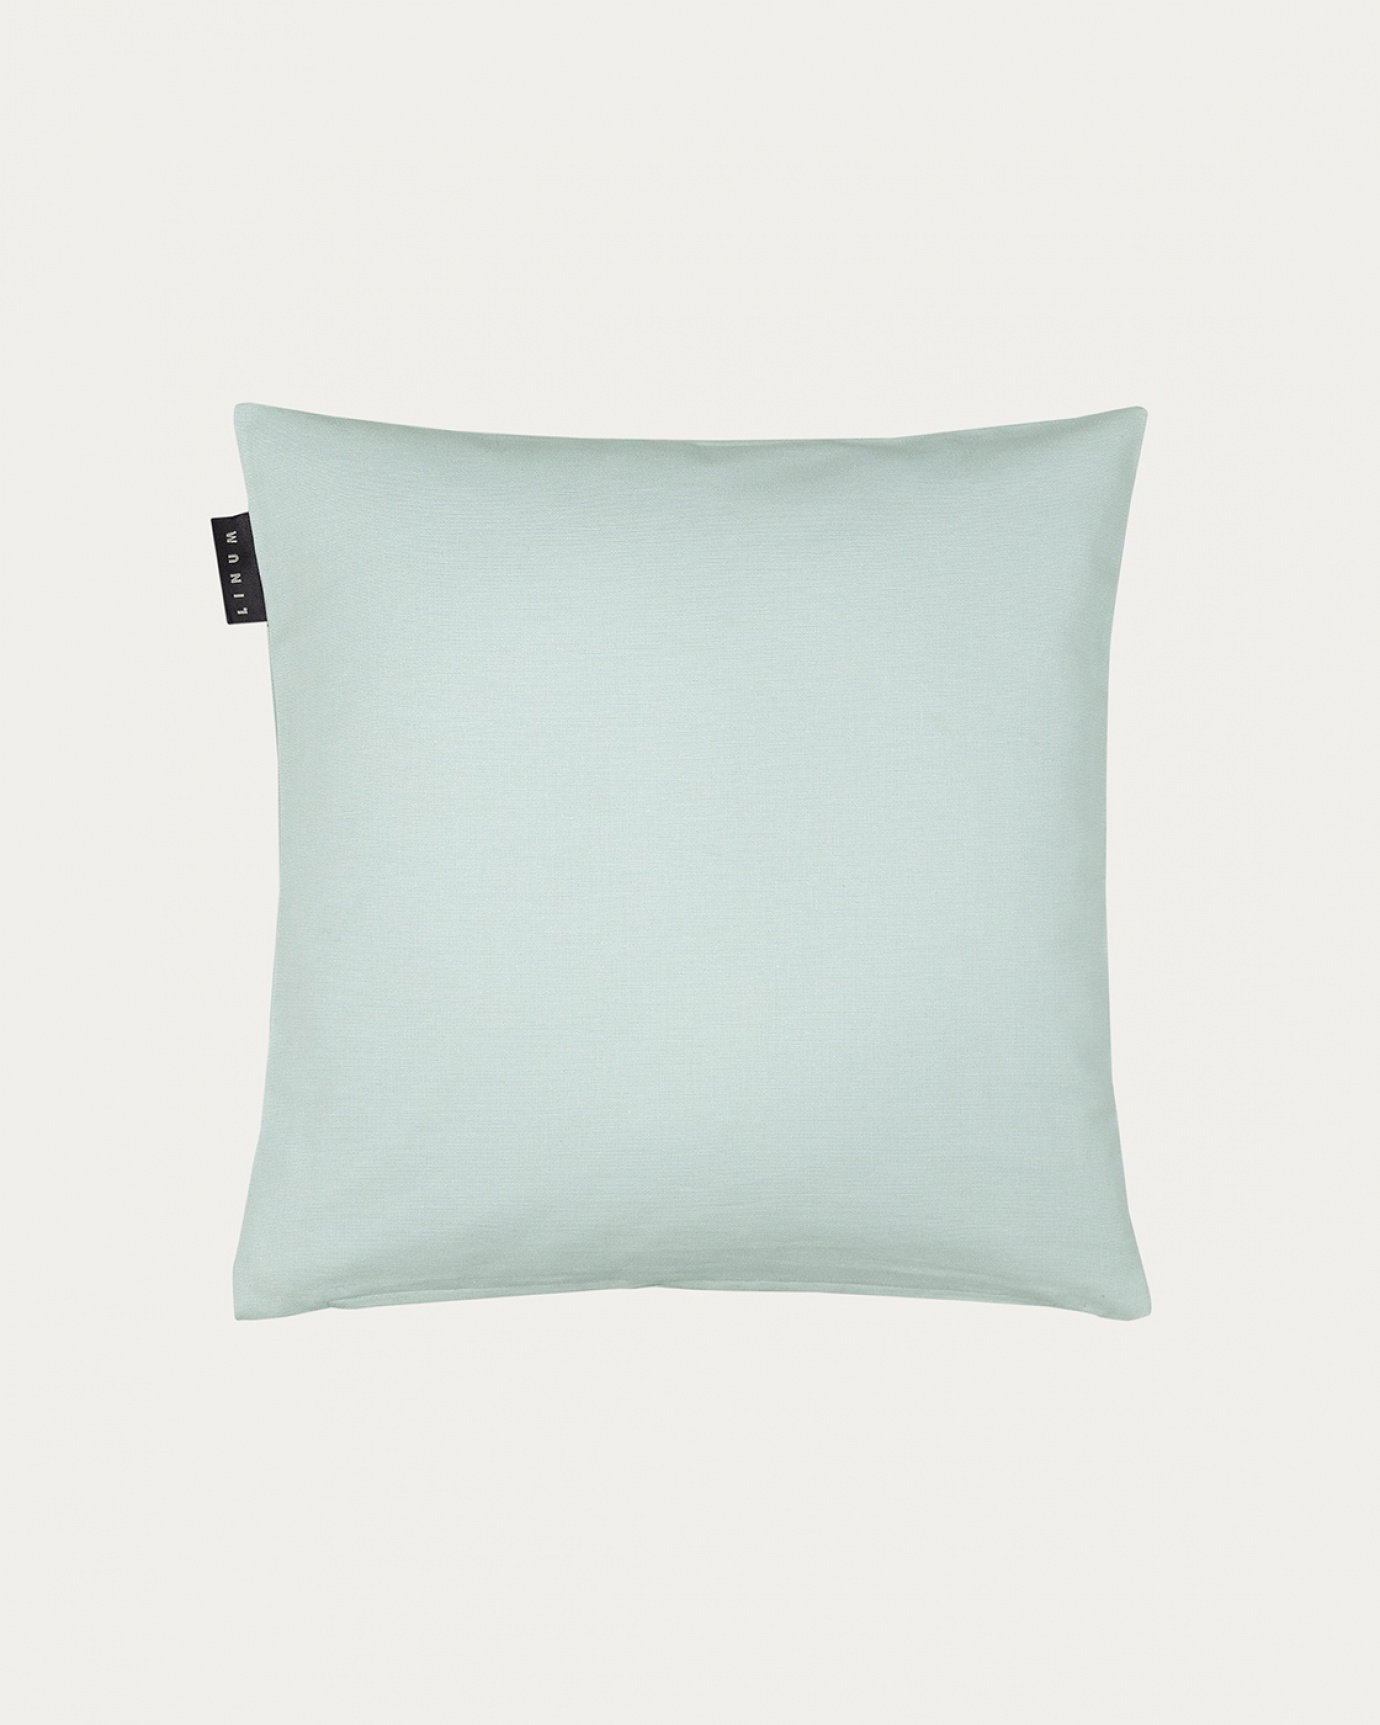 Image du produit housse de coussin ANNABELL vert clair glacé en coton doux de LINUM DESIGN. Taille 40 x 40 cm.